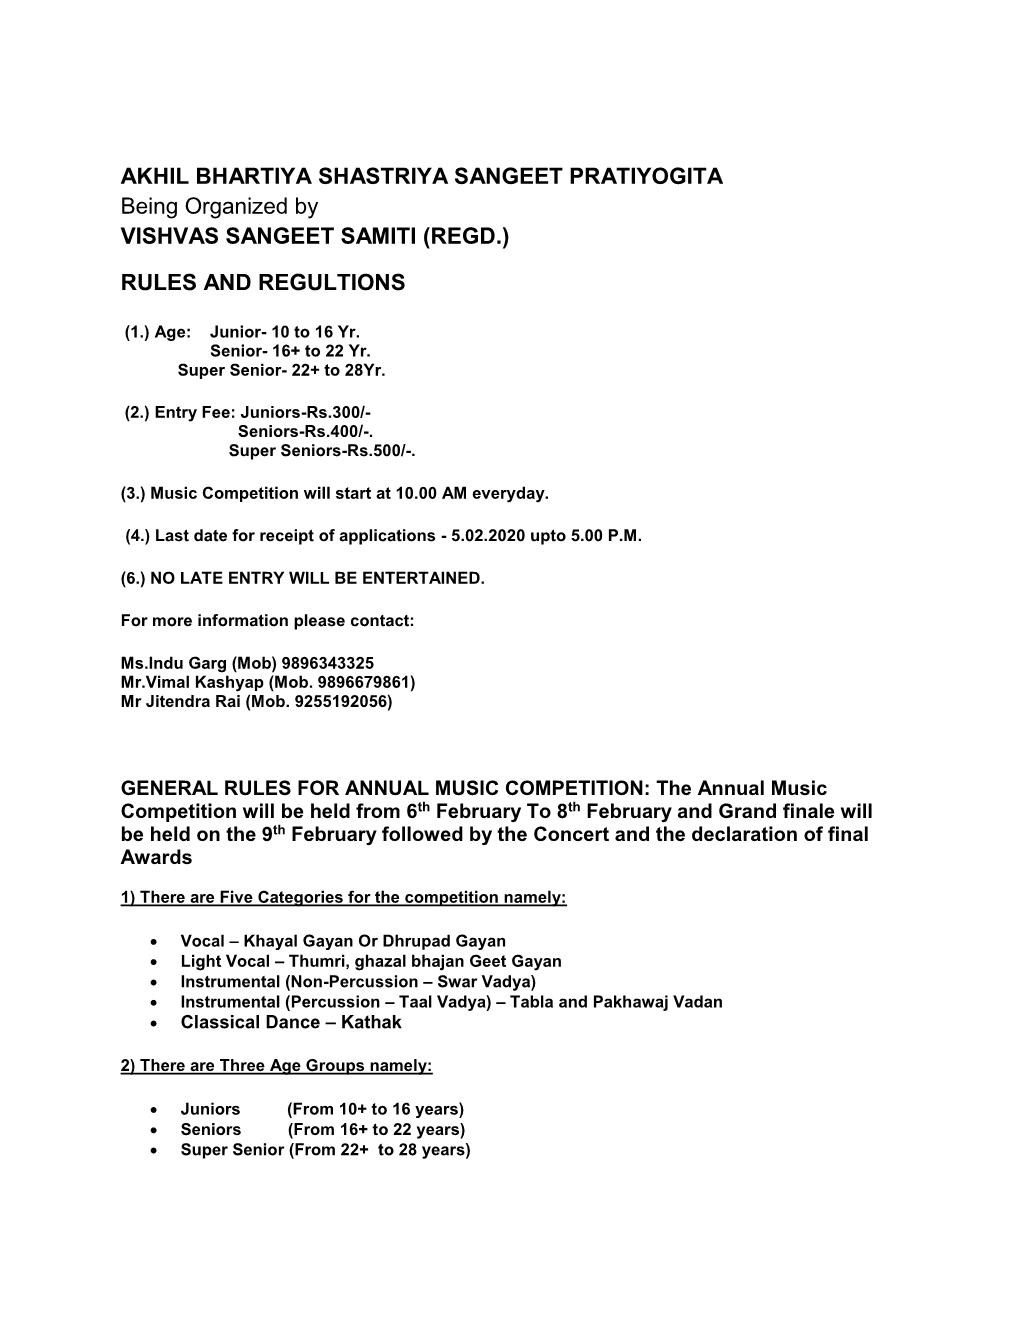 AKHIL BHARTIYA SHASTRIYA SANGEET PRATIYOGITA Being Organized by VISHVAS SANGEET SAMITI (REGD.)